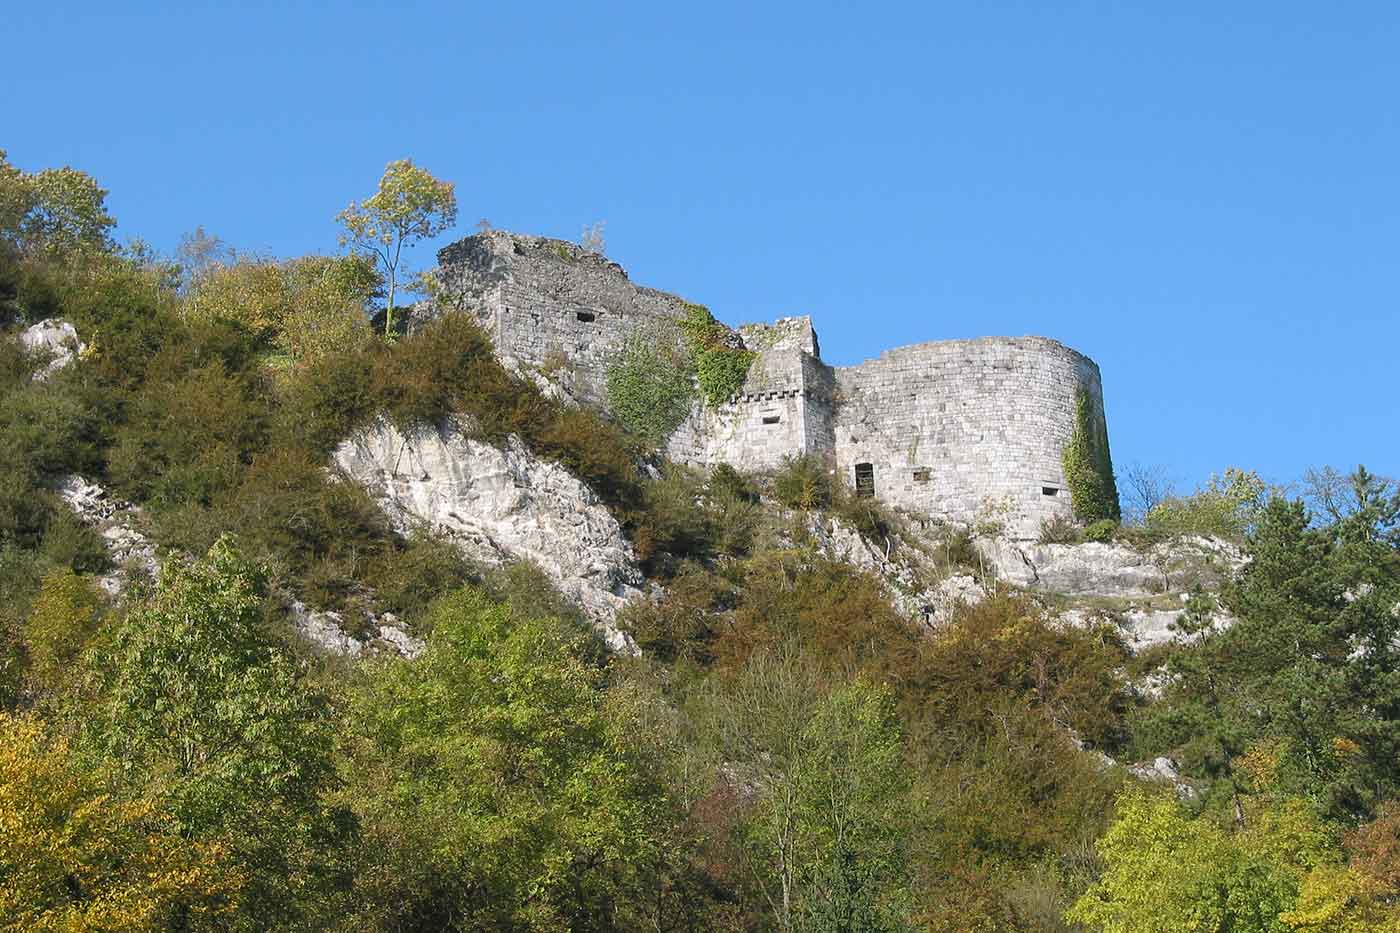 Castle of Crevecoeur